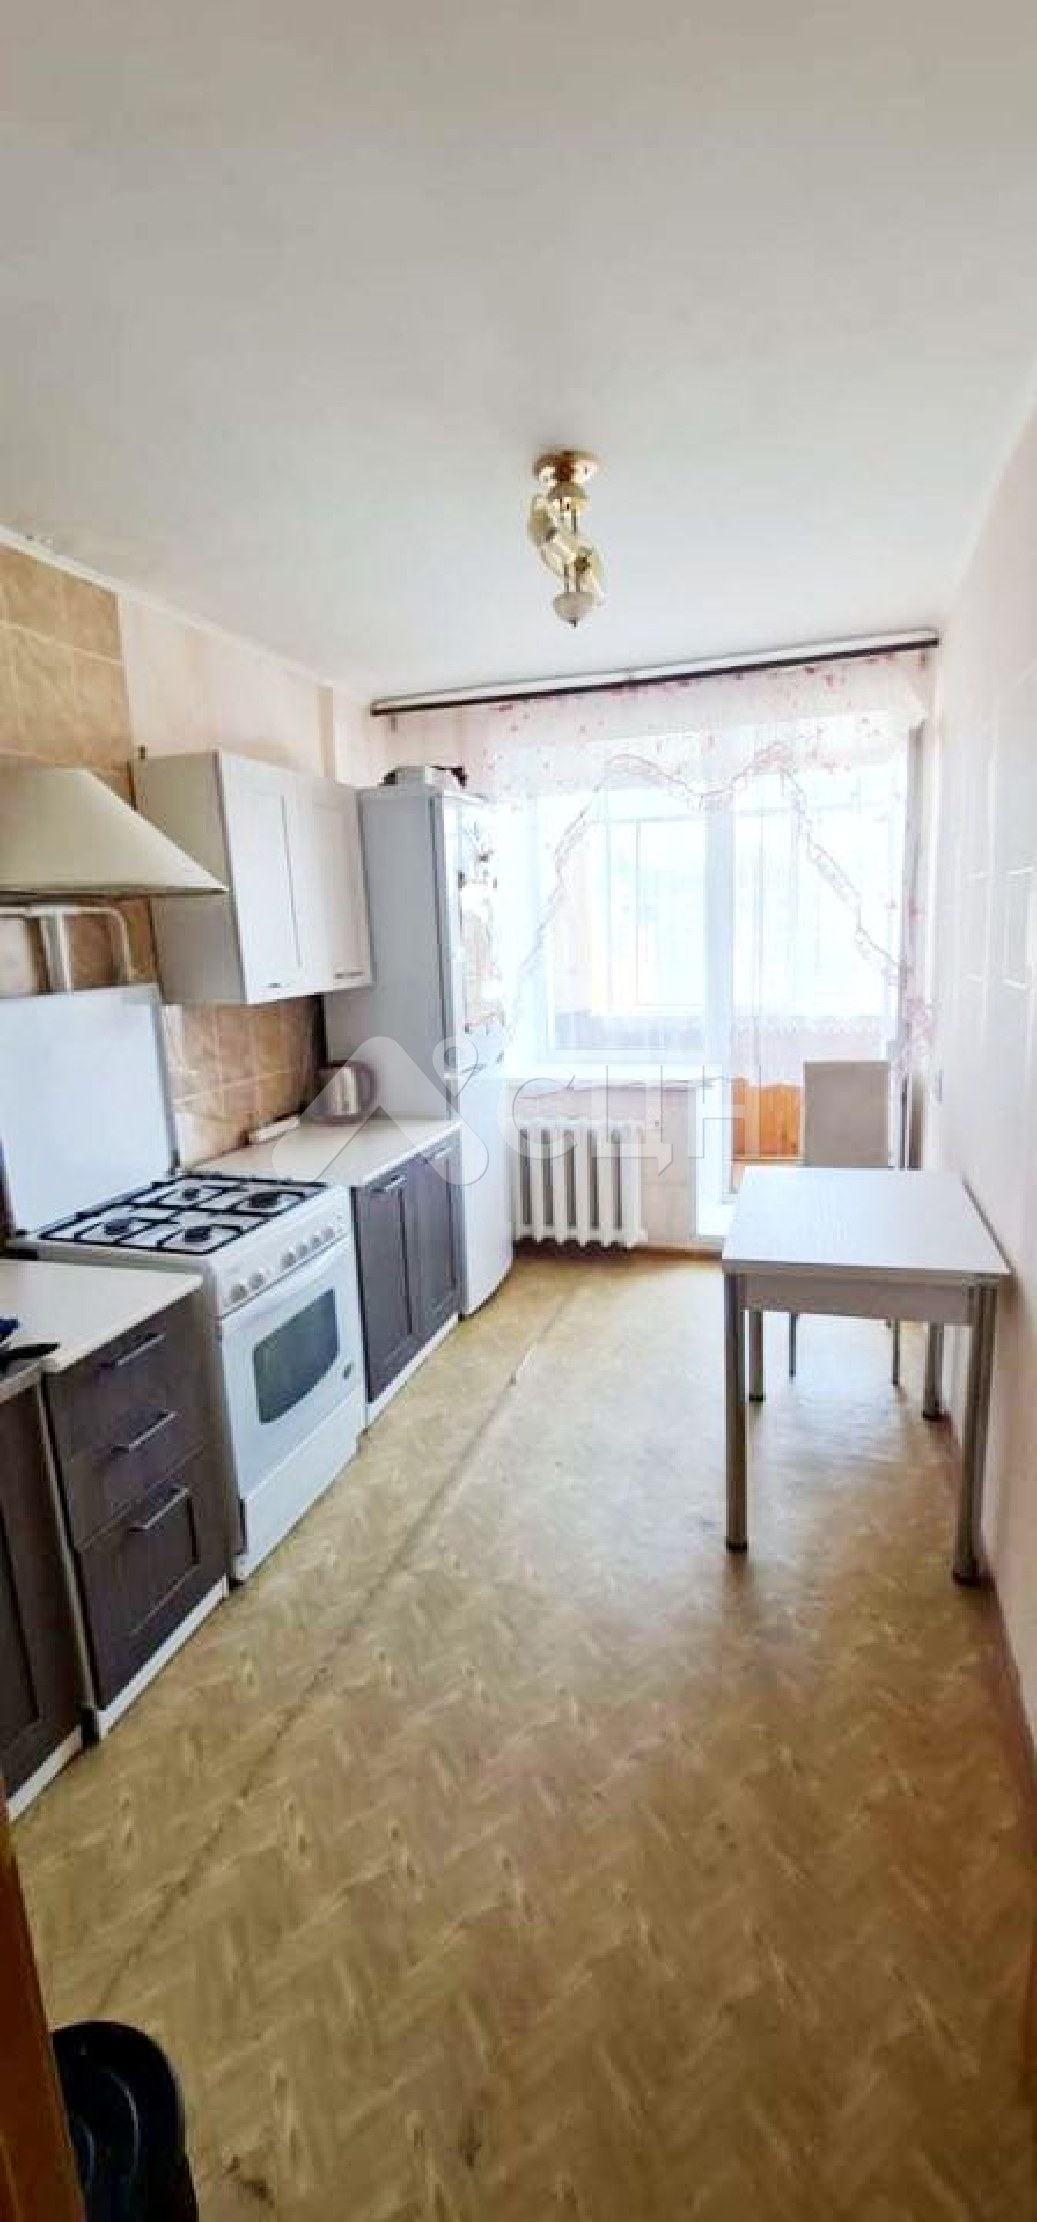 циан саров недвижимость
: Г. Сатис, улица Заводская, 12, 2-комн квартира, этаж 3 из 3, продажа.